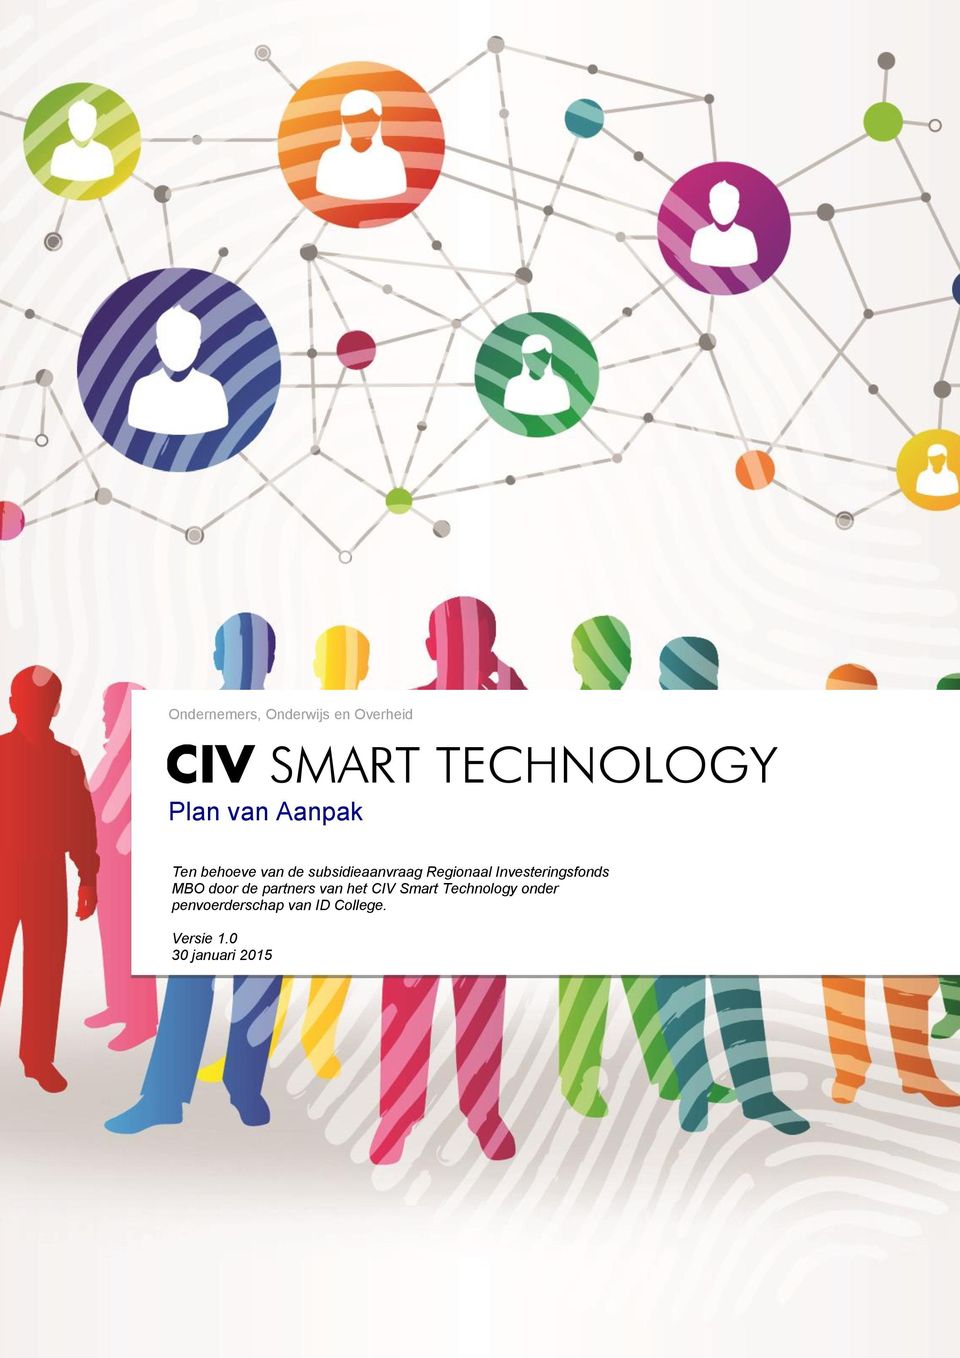 Investeringsfonds MBO door de partners van het CIV Smart